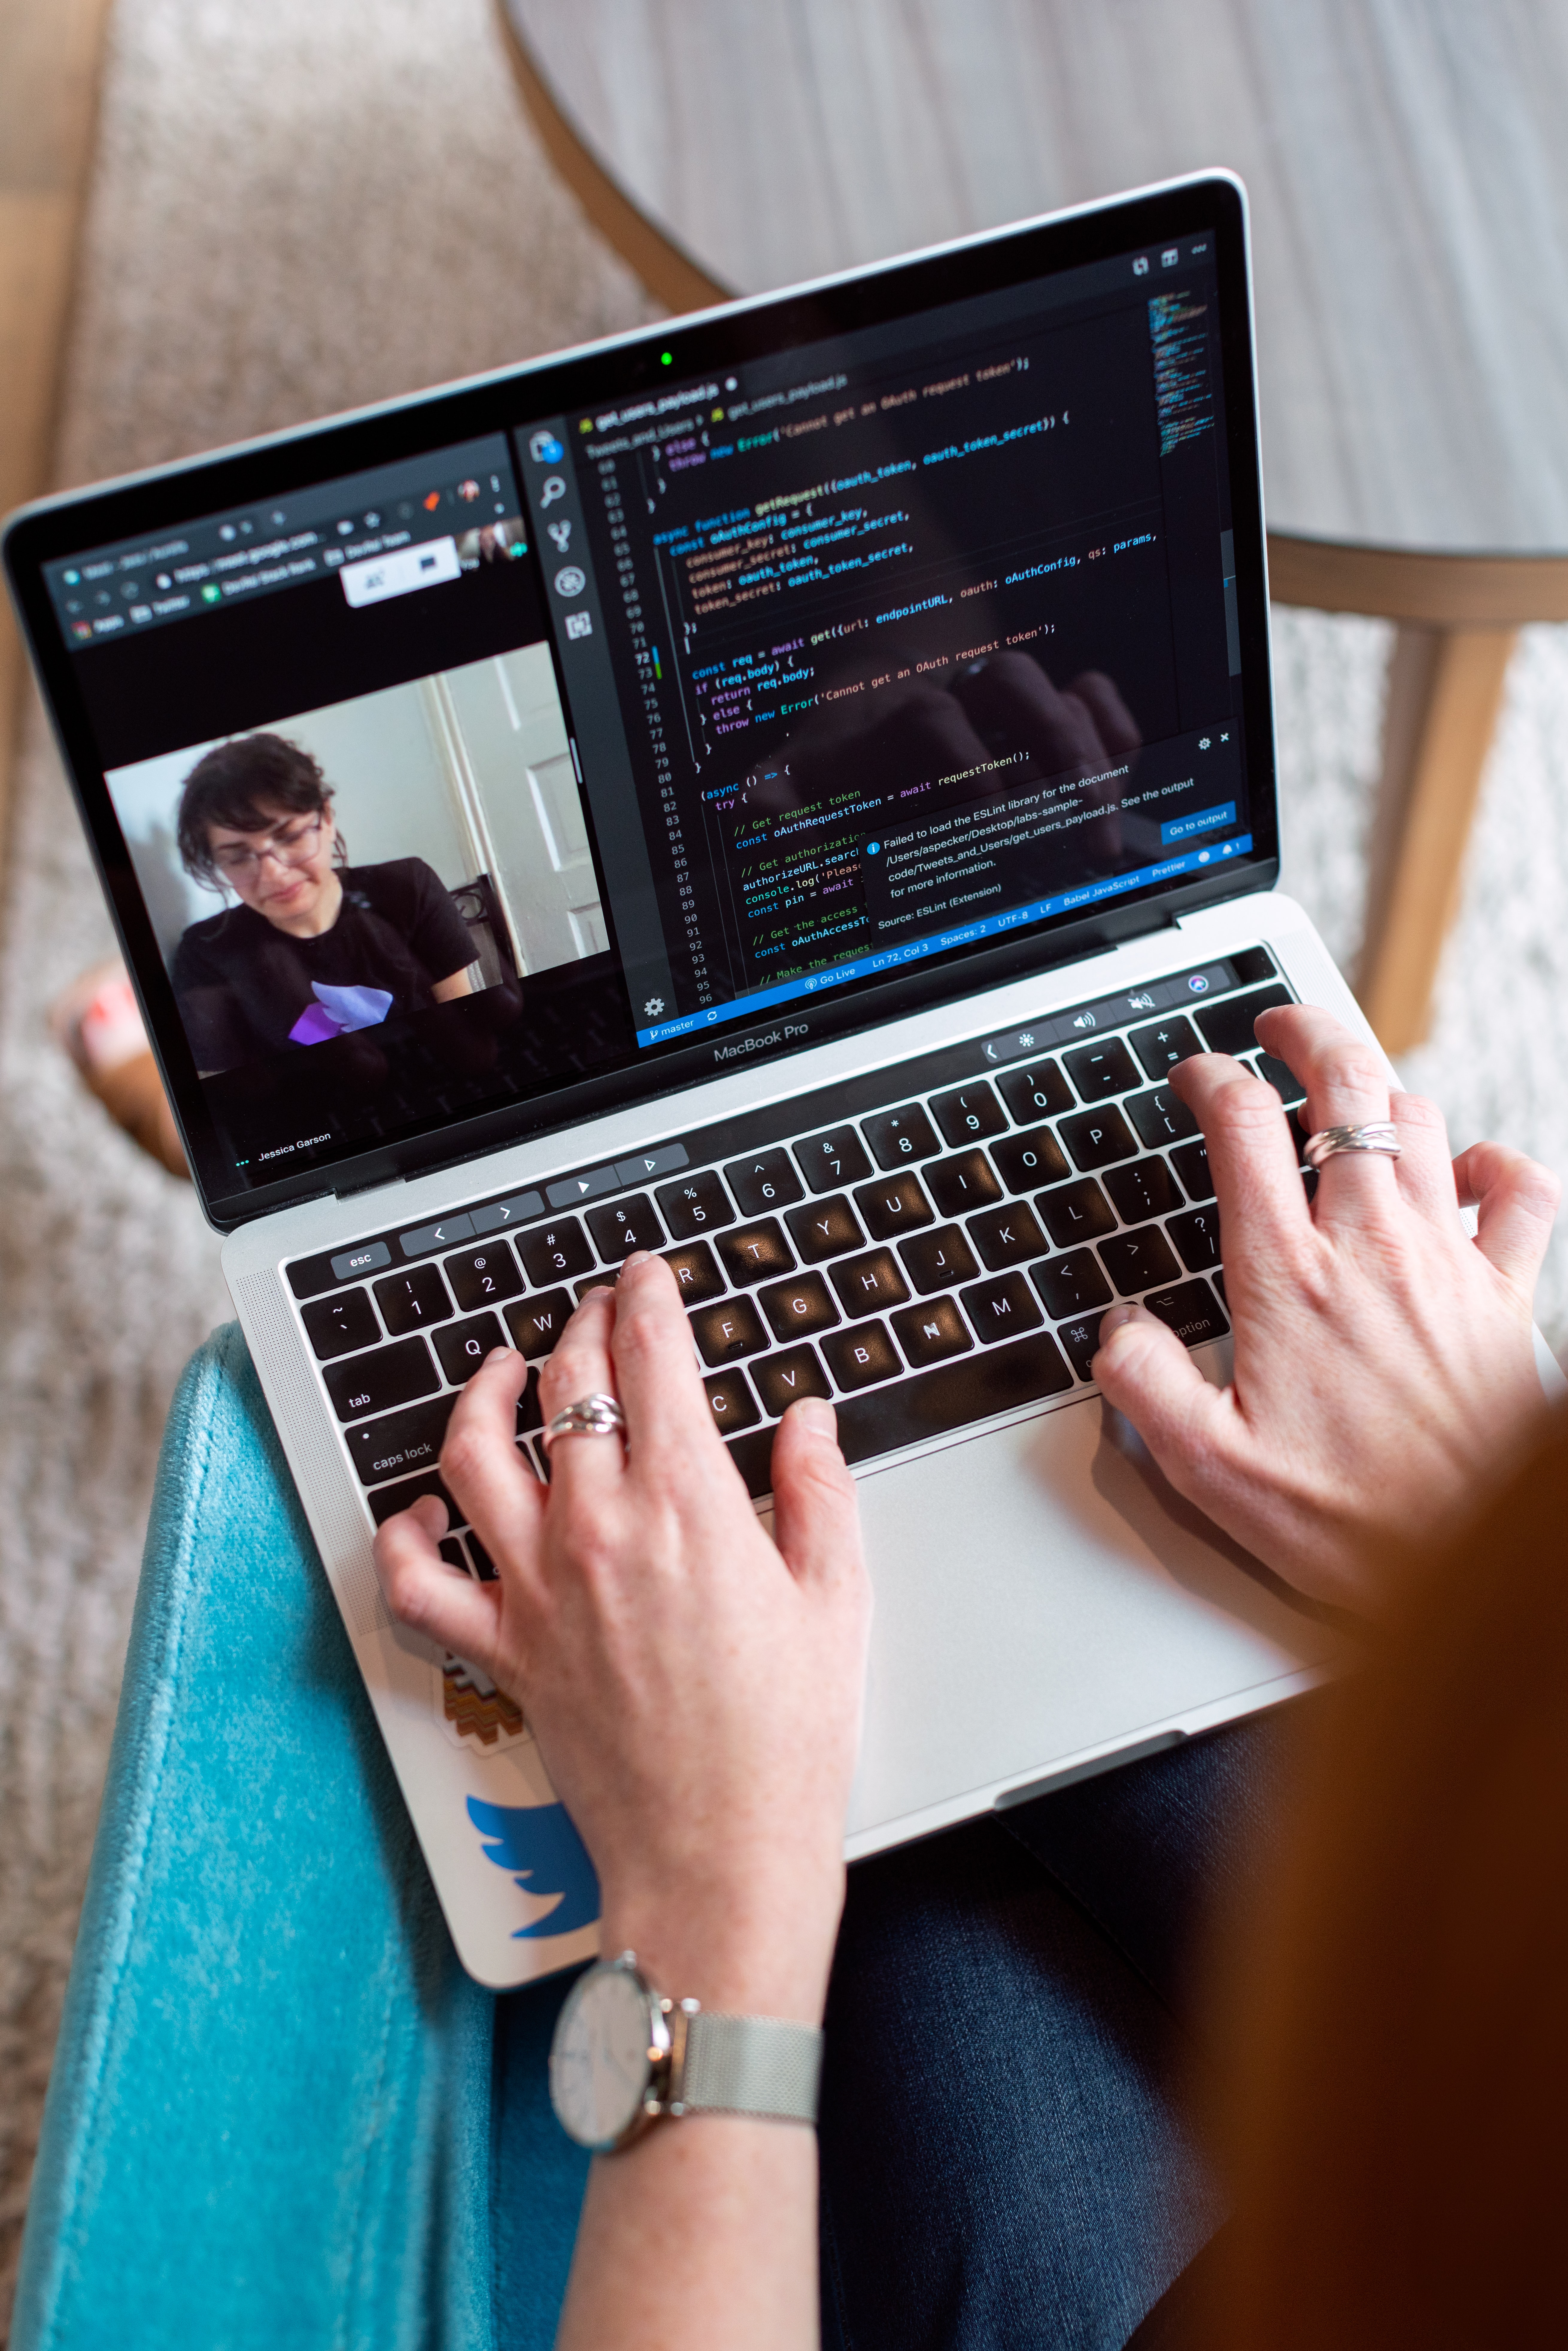 Na segunda foto que ilustra o post, vemos uma pessoa digitando em seu laptop enquanto participa de uma videoconferência com uma mulher.